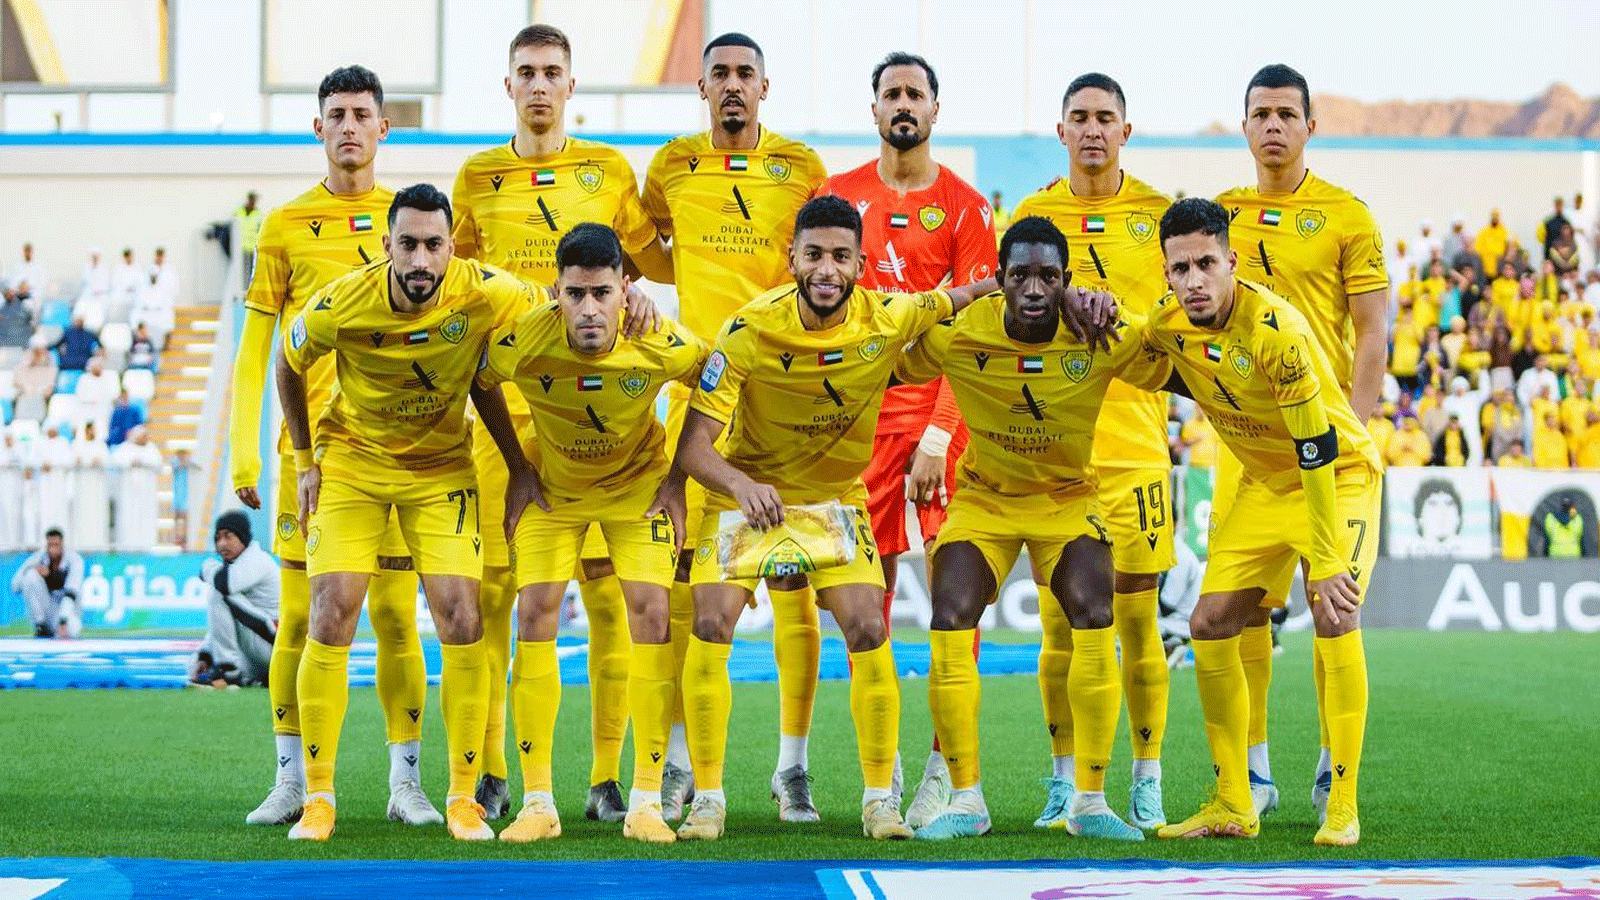 تشكيلة فريق نادي الوصل في مباراته مع دبا(تويتر)